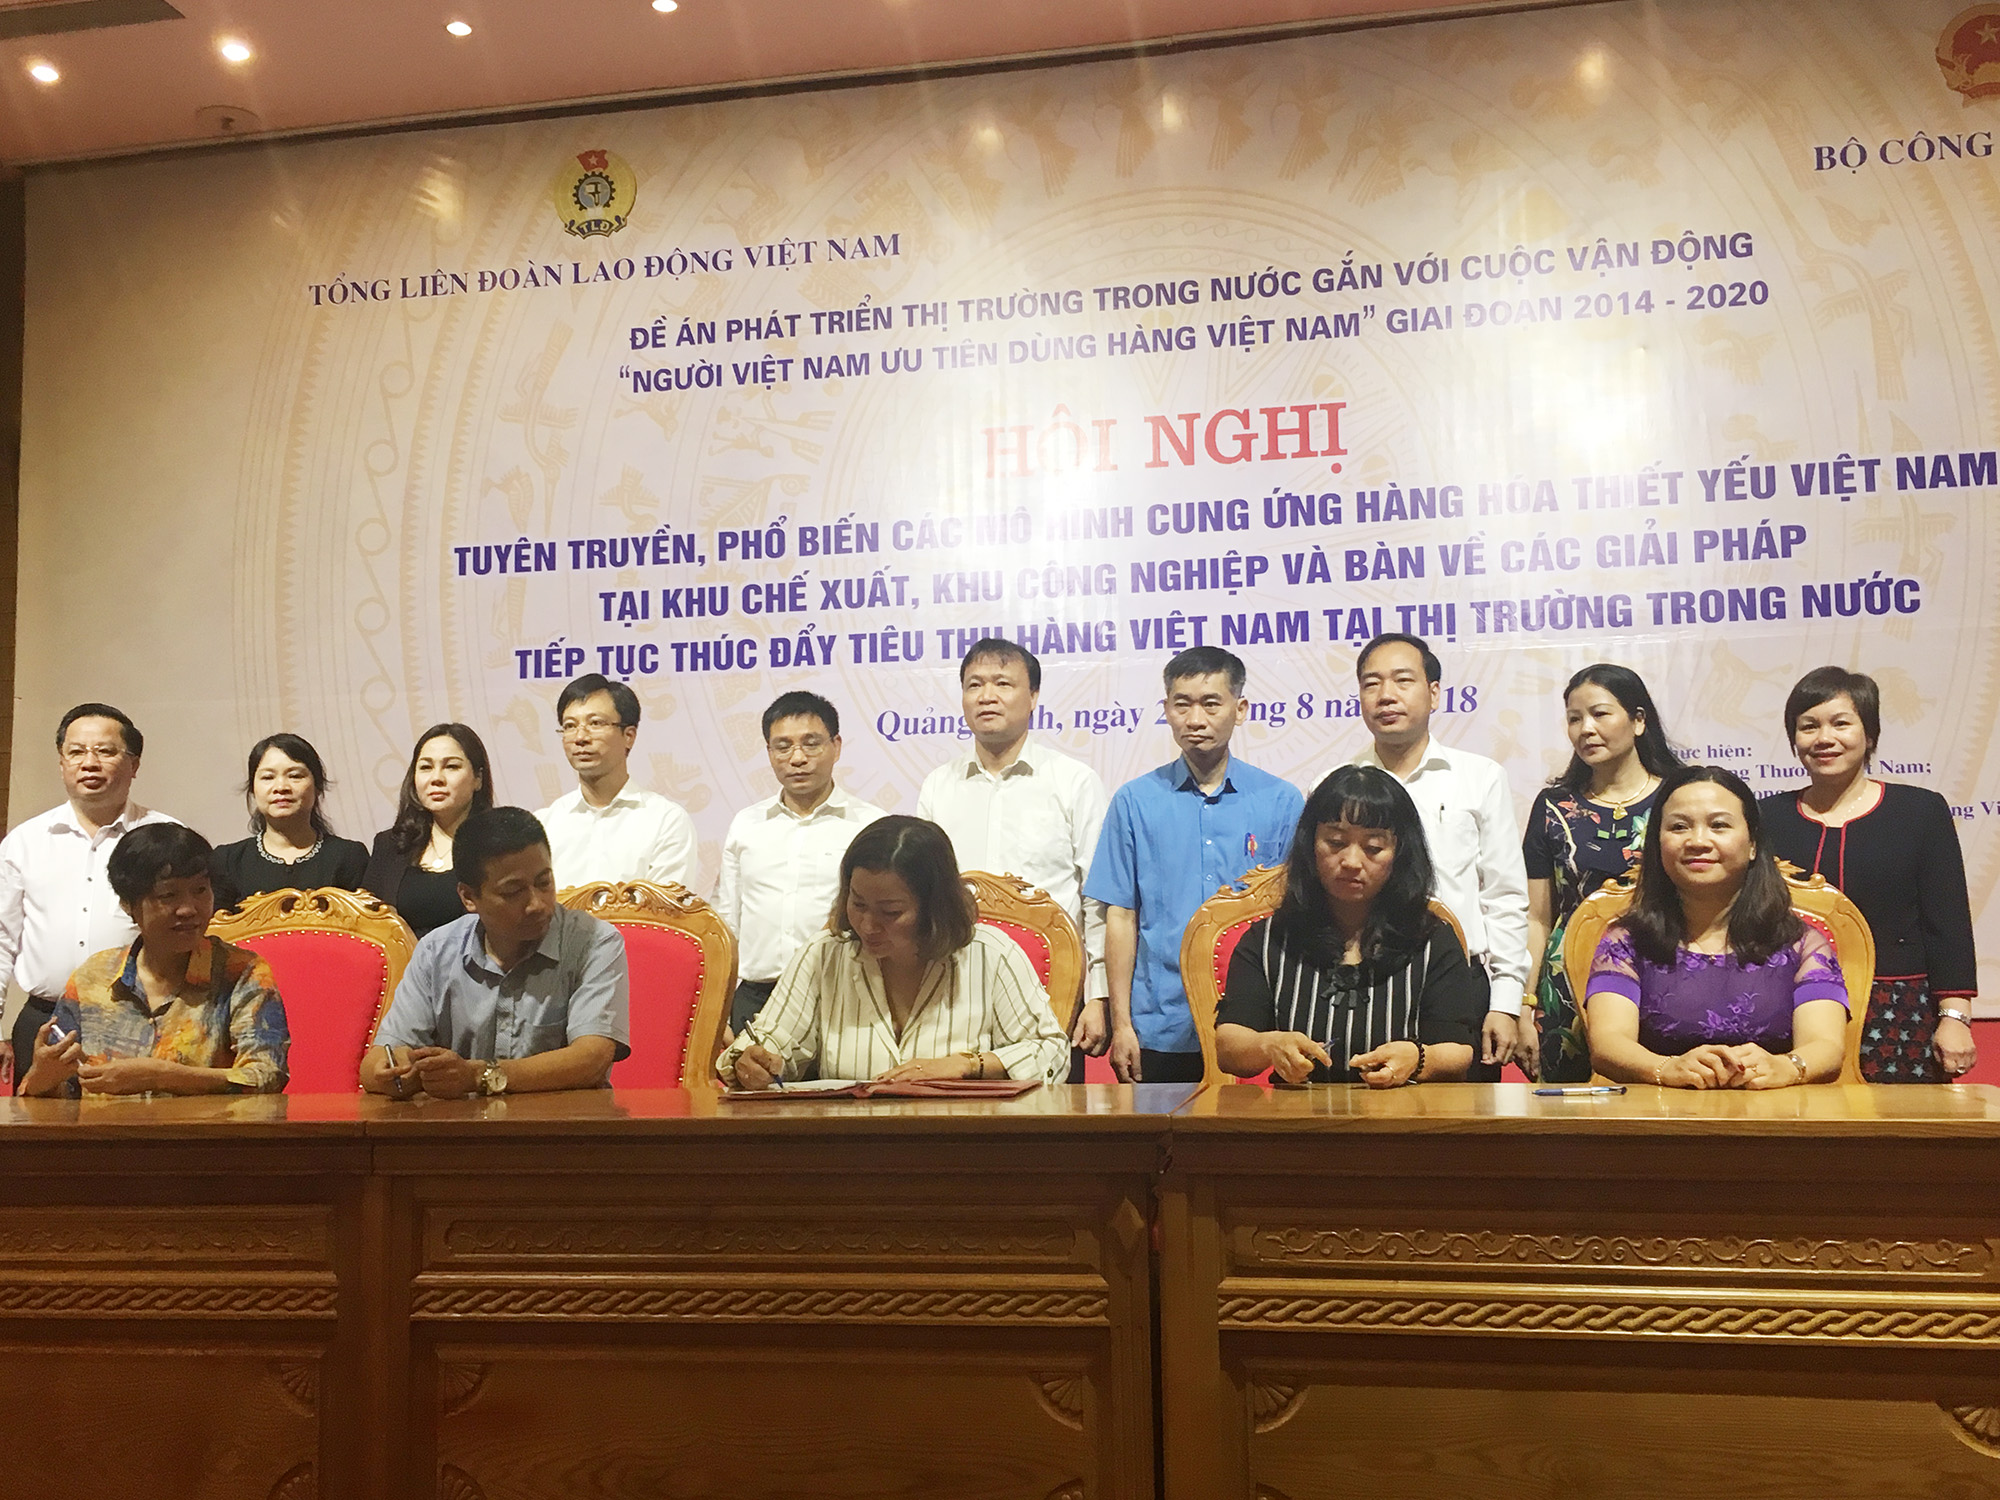 các doanh nghiệp đã ký kết biên bản thảo thuận hợp tác xúc tiến cung ứng hàng Việt Nam phục vụ công nhân, công đoàn viên, người lao động.